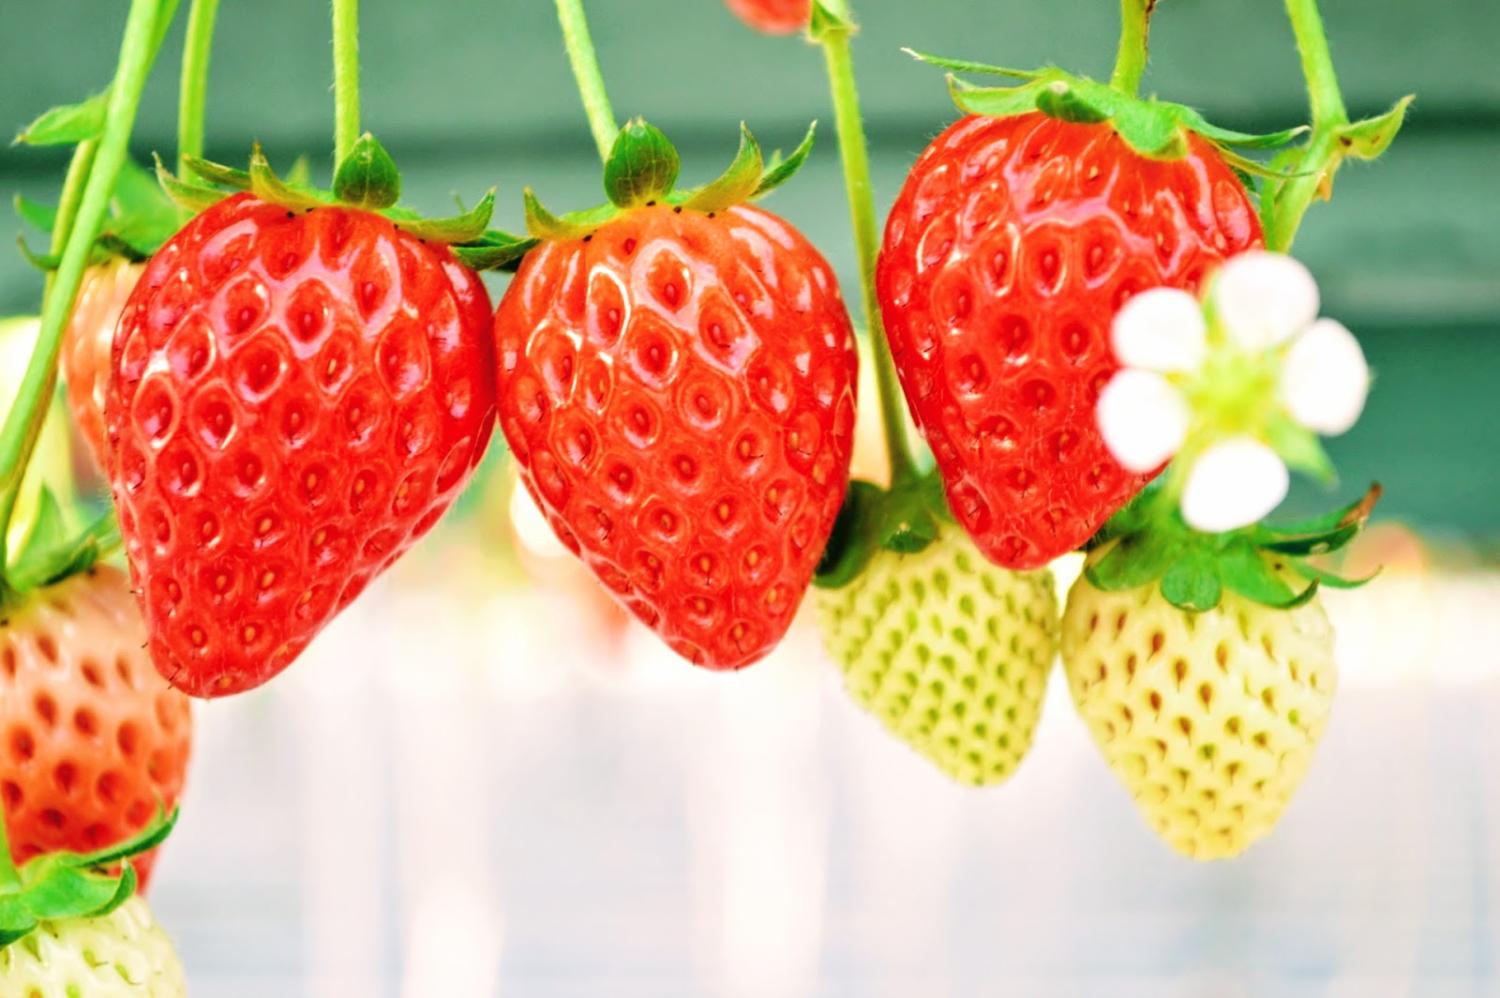 Young's Holidays 悠揚假期 【田園草莓之味】福岡Berry Field草莓60分鐘任食體驗 3